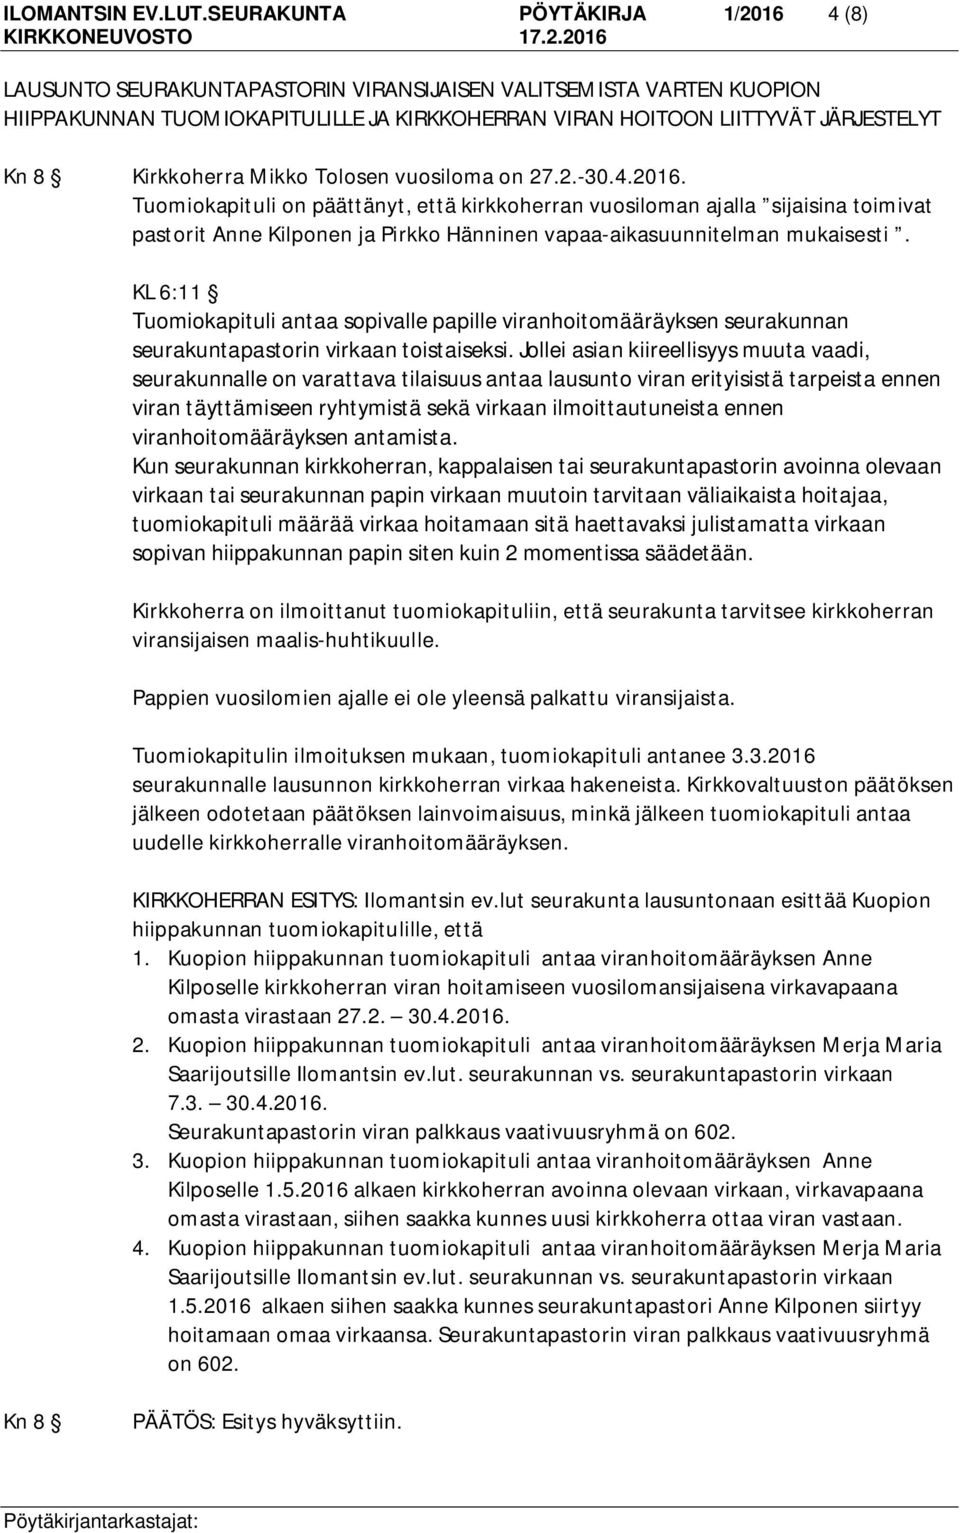 Kirkkoherra Mikko Tolosen vuosiloma on 27.2.-30.4.2016.